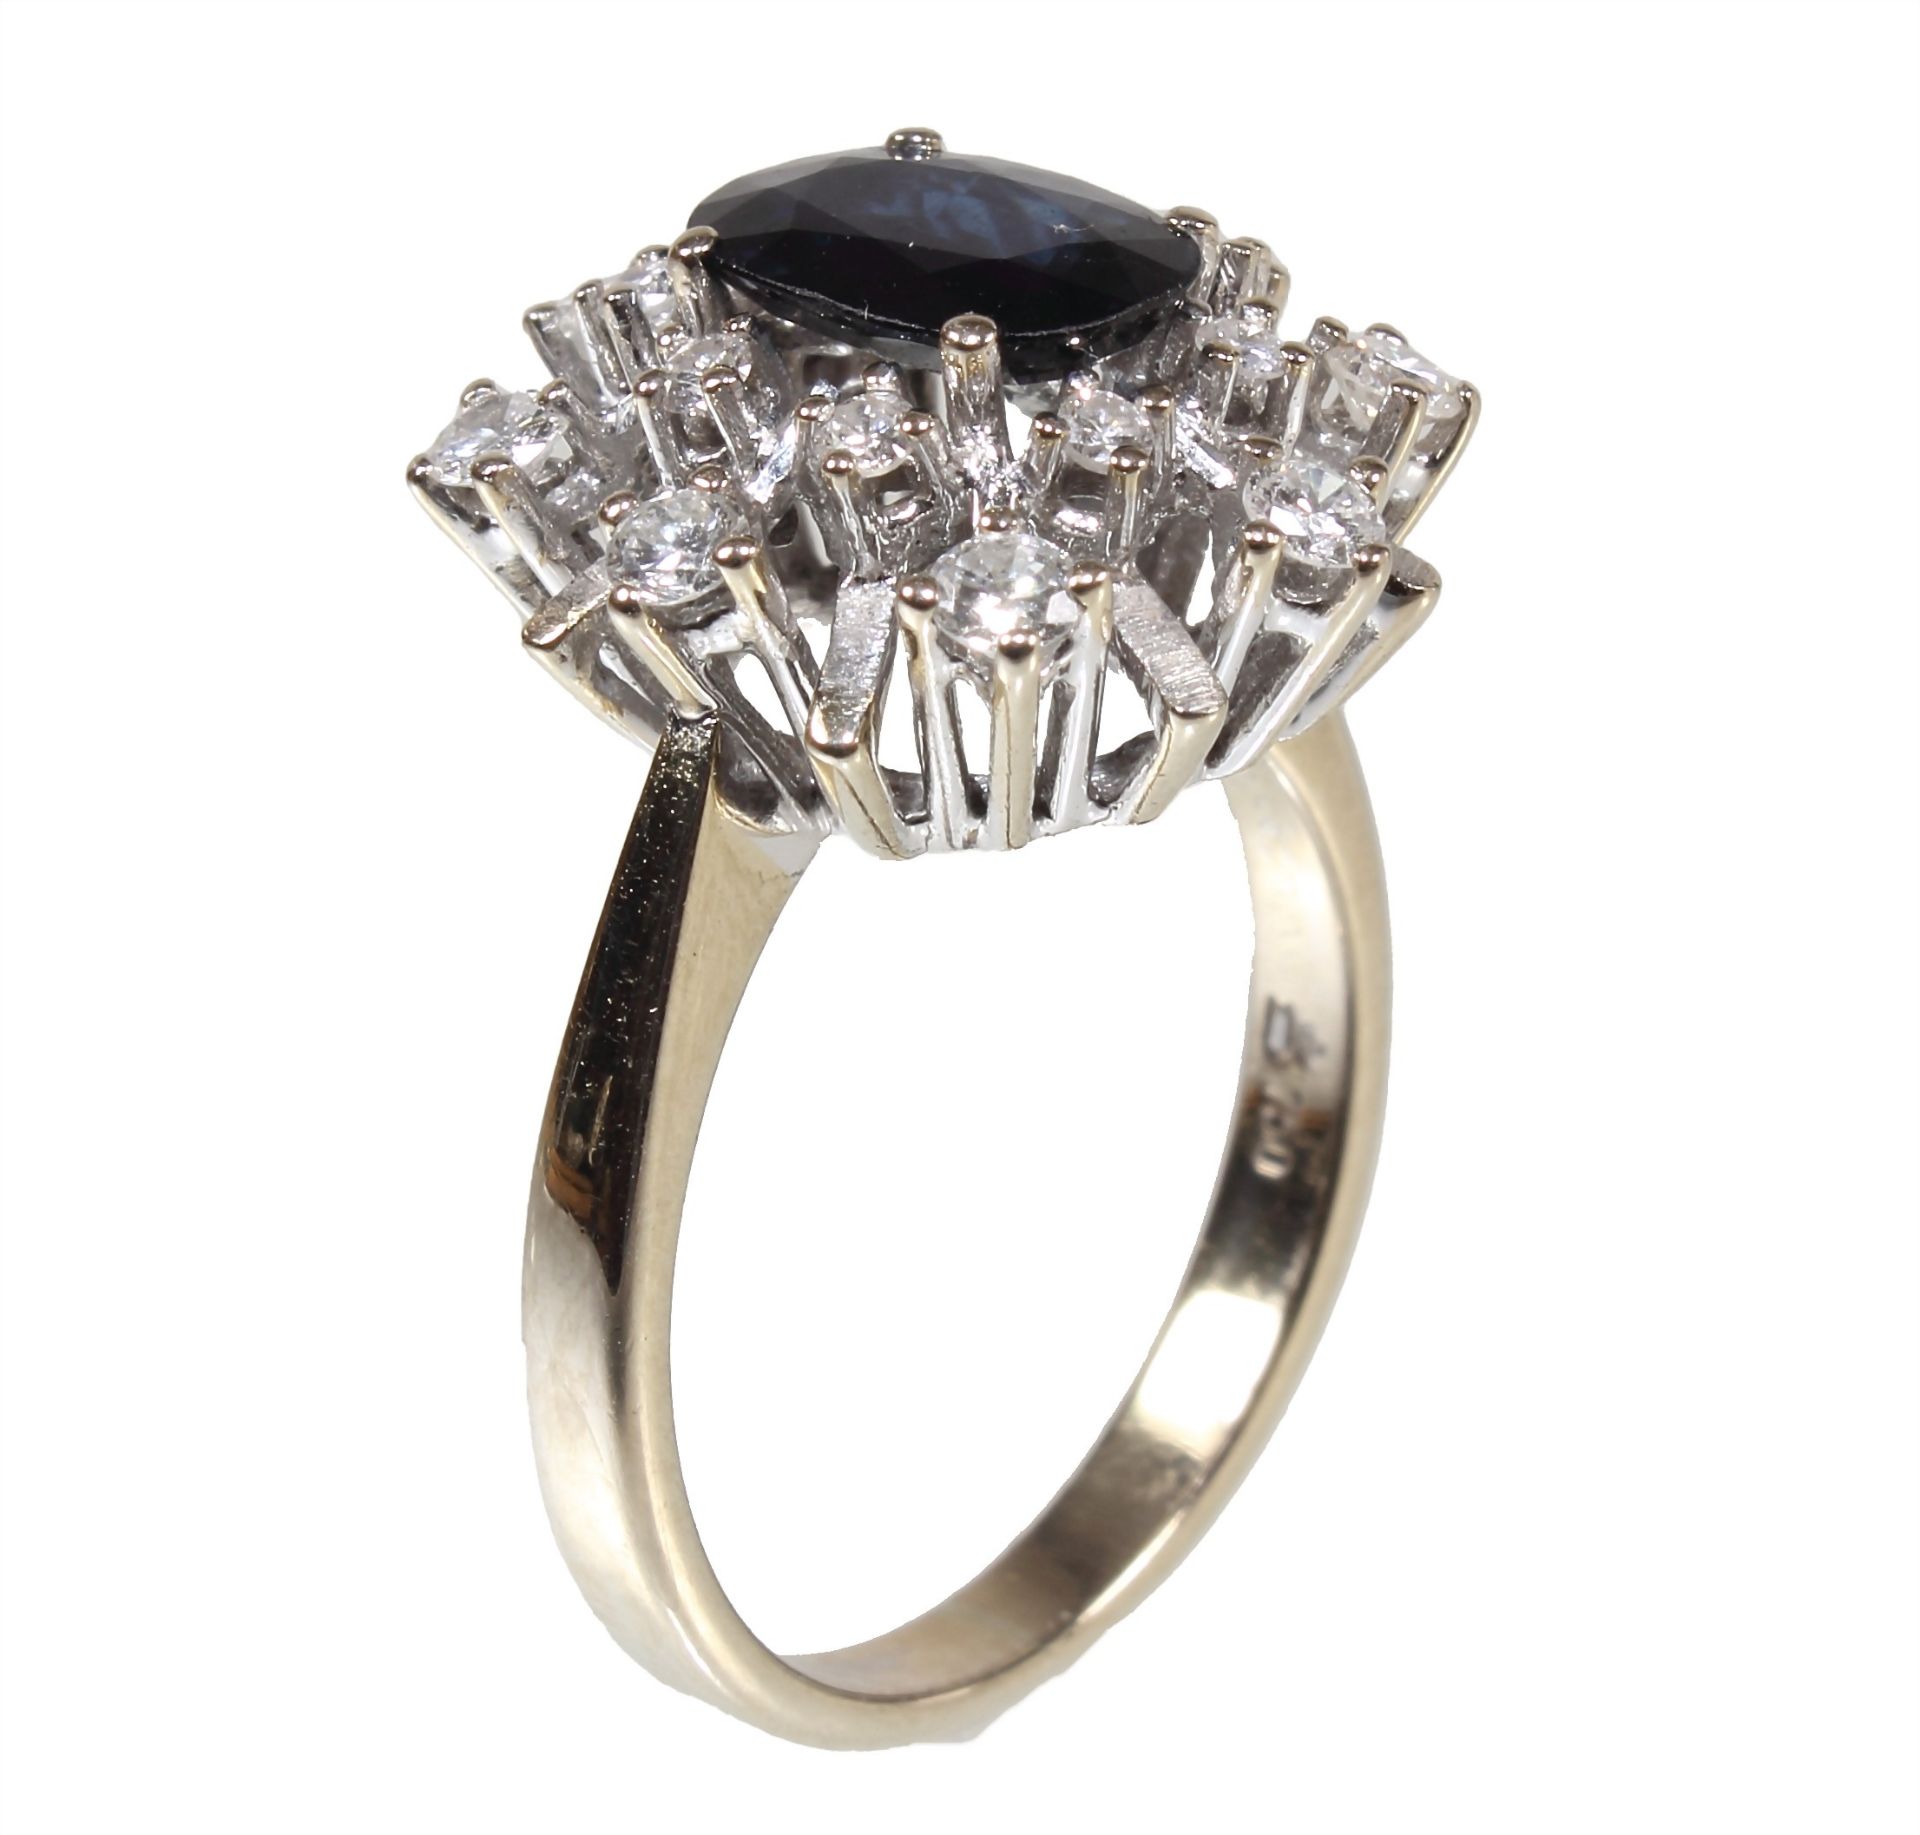 Ring, GG 585/000, ovaler Saphir ca. 1,16 ct (eingraviert) ct, ca. 8,3 x 6,0 mm, 16 Brillanten ... - Bild 2 aus 2